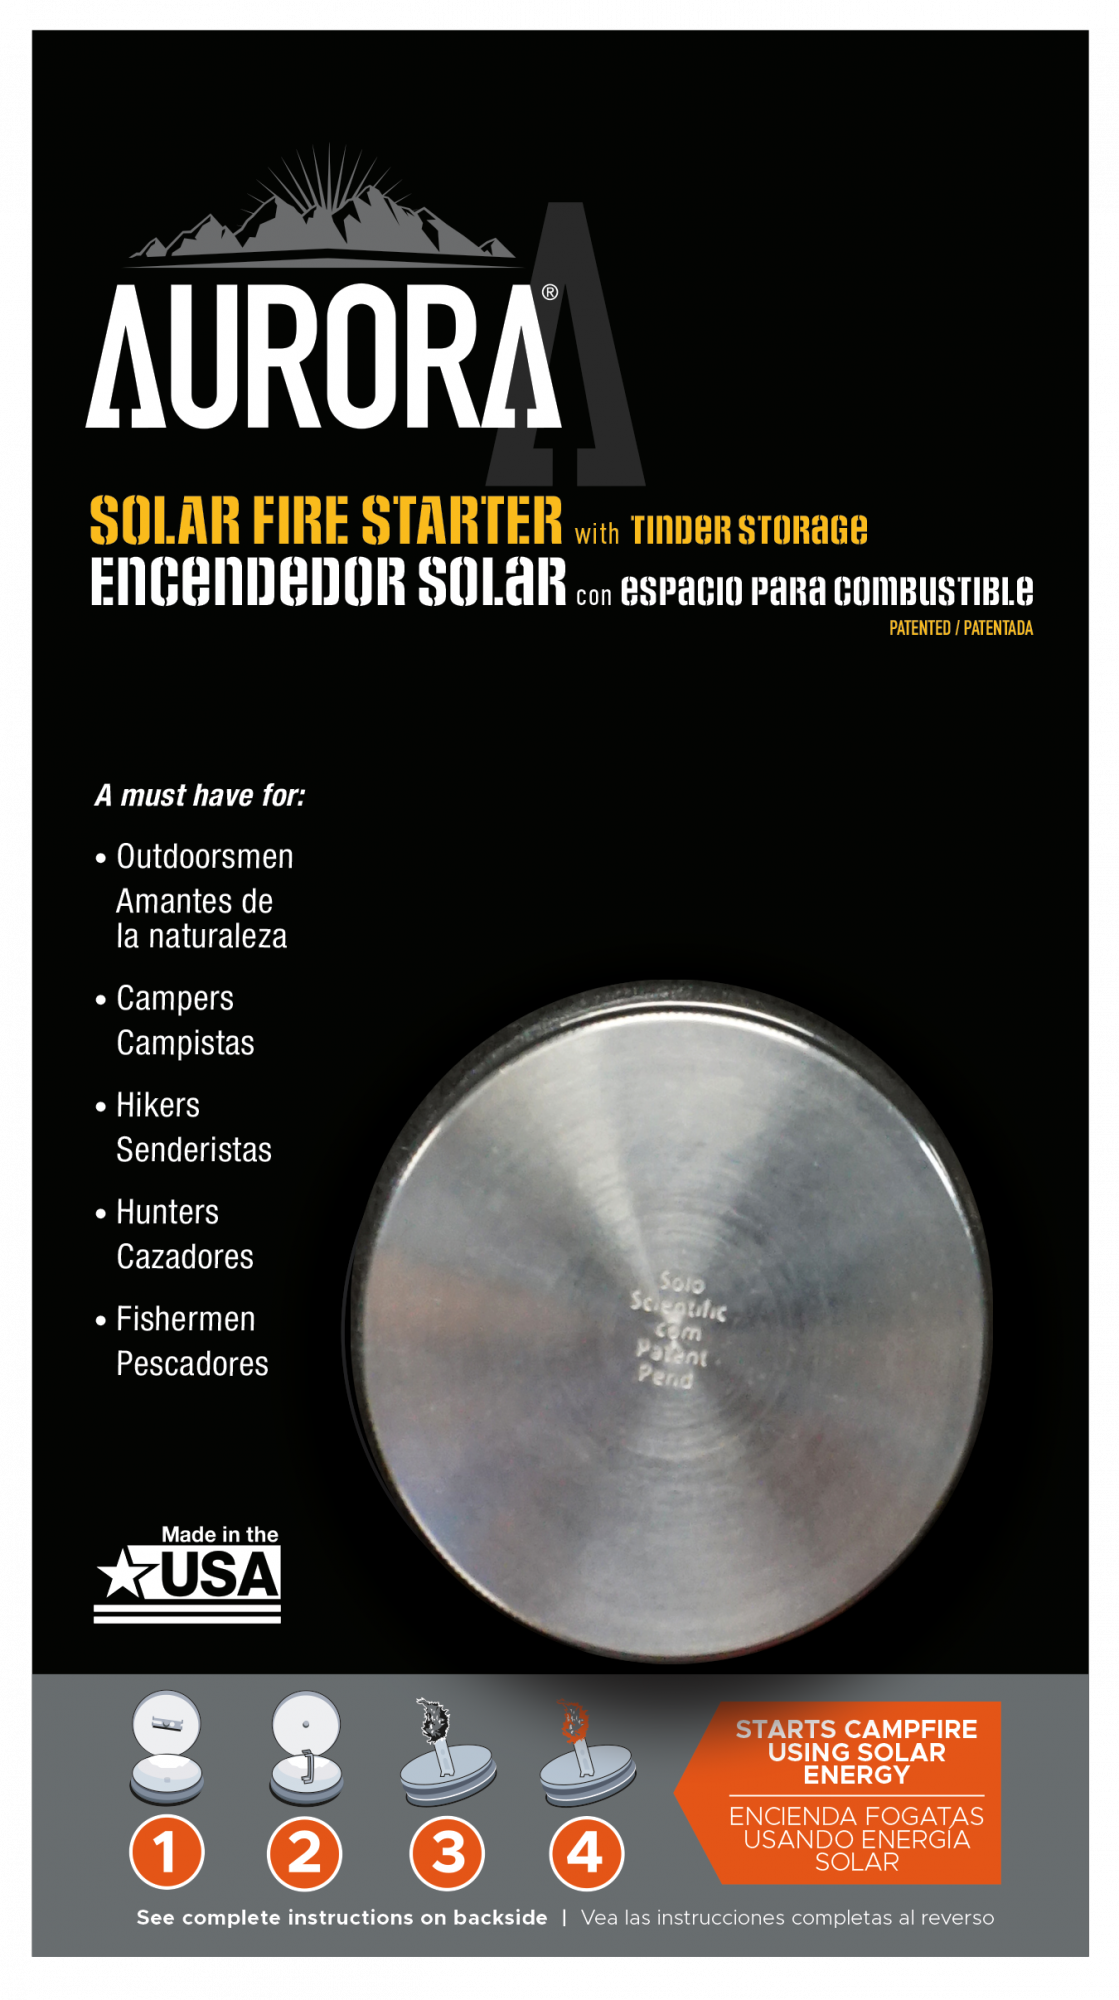 AURORA Solar Fire Starter with Tinder Storage